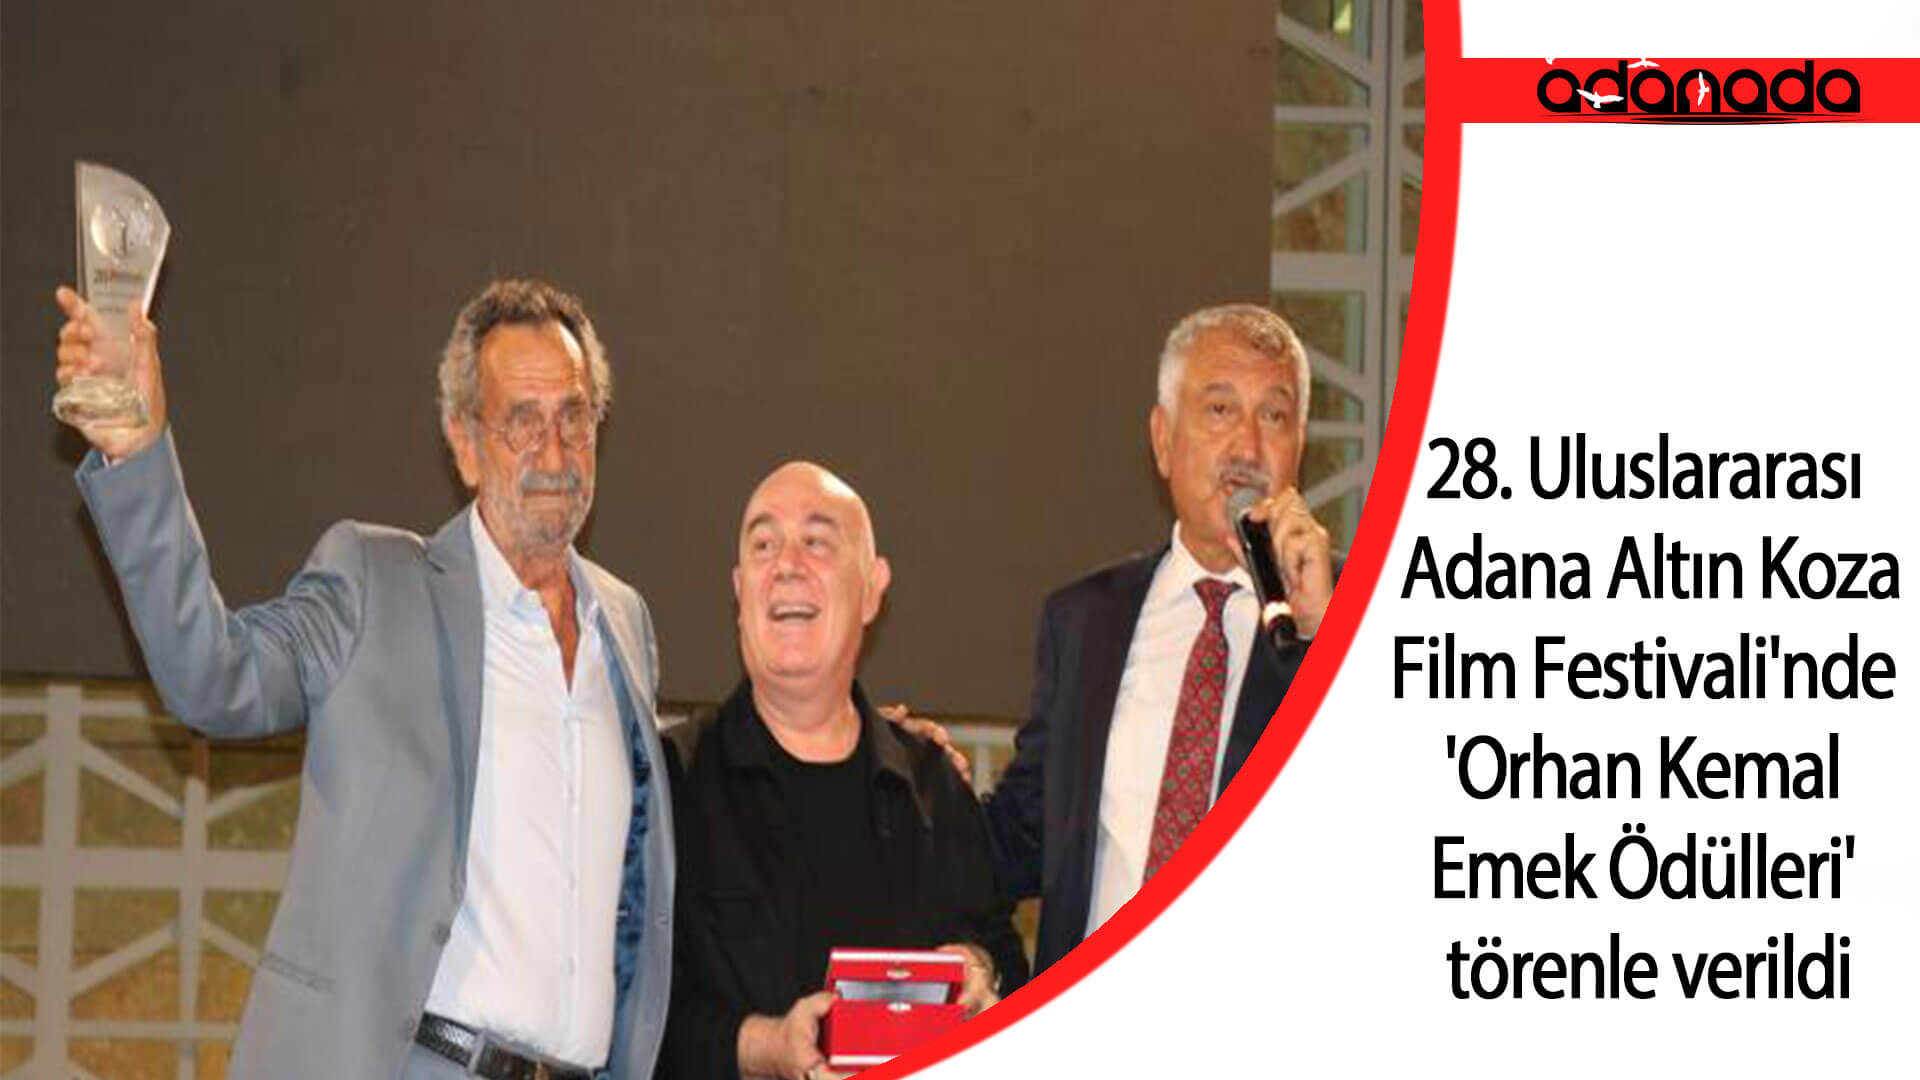 28. Uluslararası Adana Altın Koza Film Festivali’nde ‘Orhan Kemal Emek Ödülleri’ törenle verildi